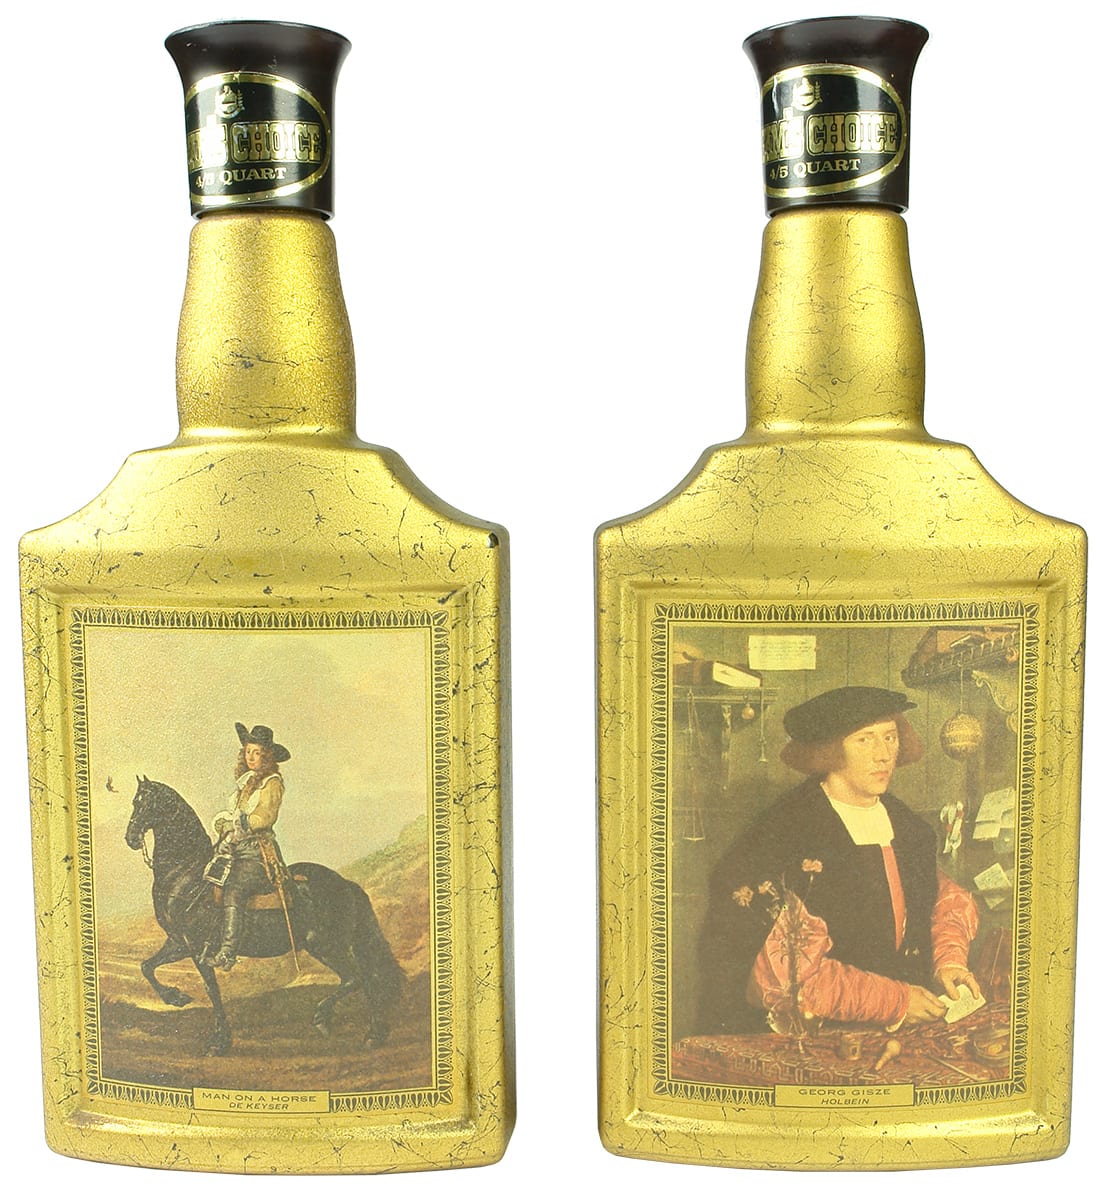 Jime Beam Art Series Bottles